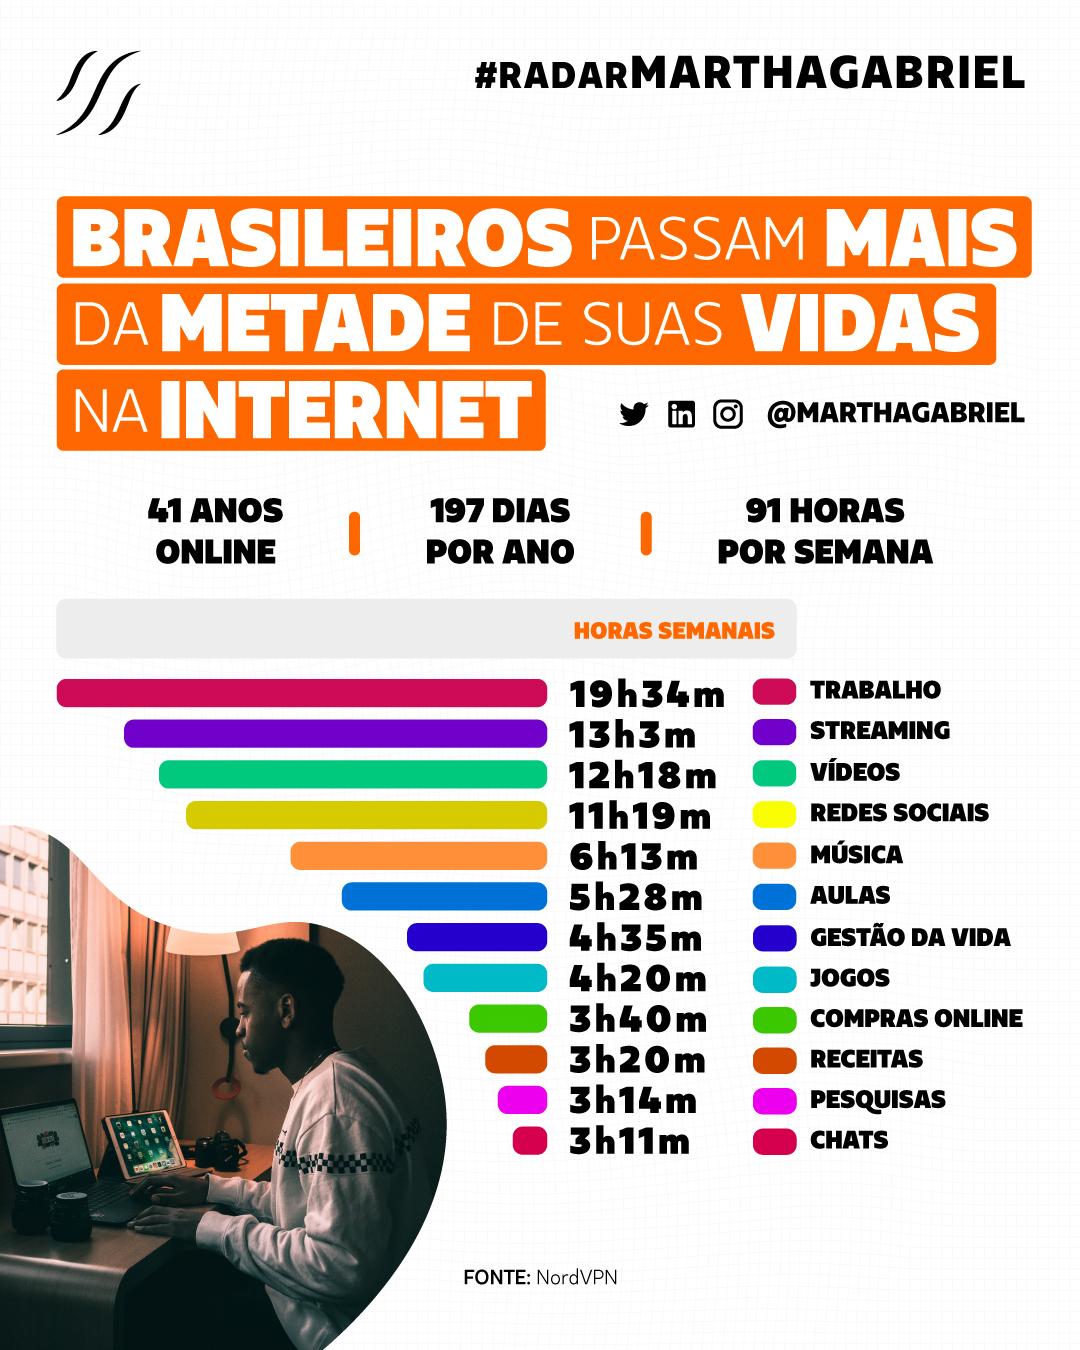 Brasileiros passam mais da metade de suas vidas na internet